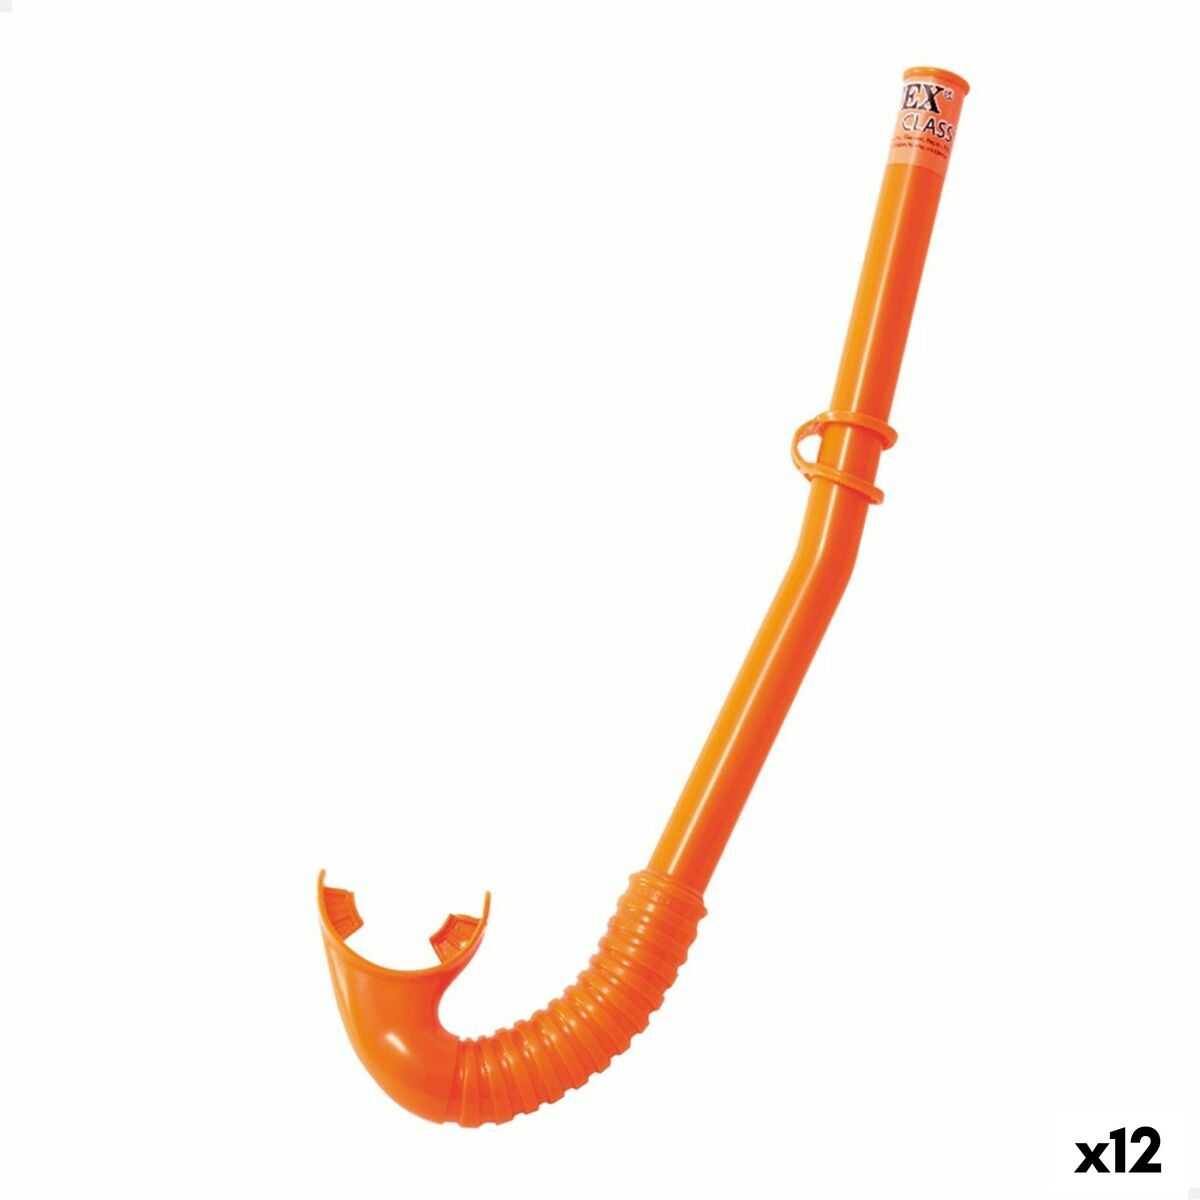 Snorkel tube Intex Hi-Flow (12 Units)